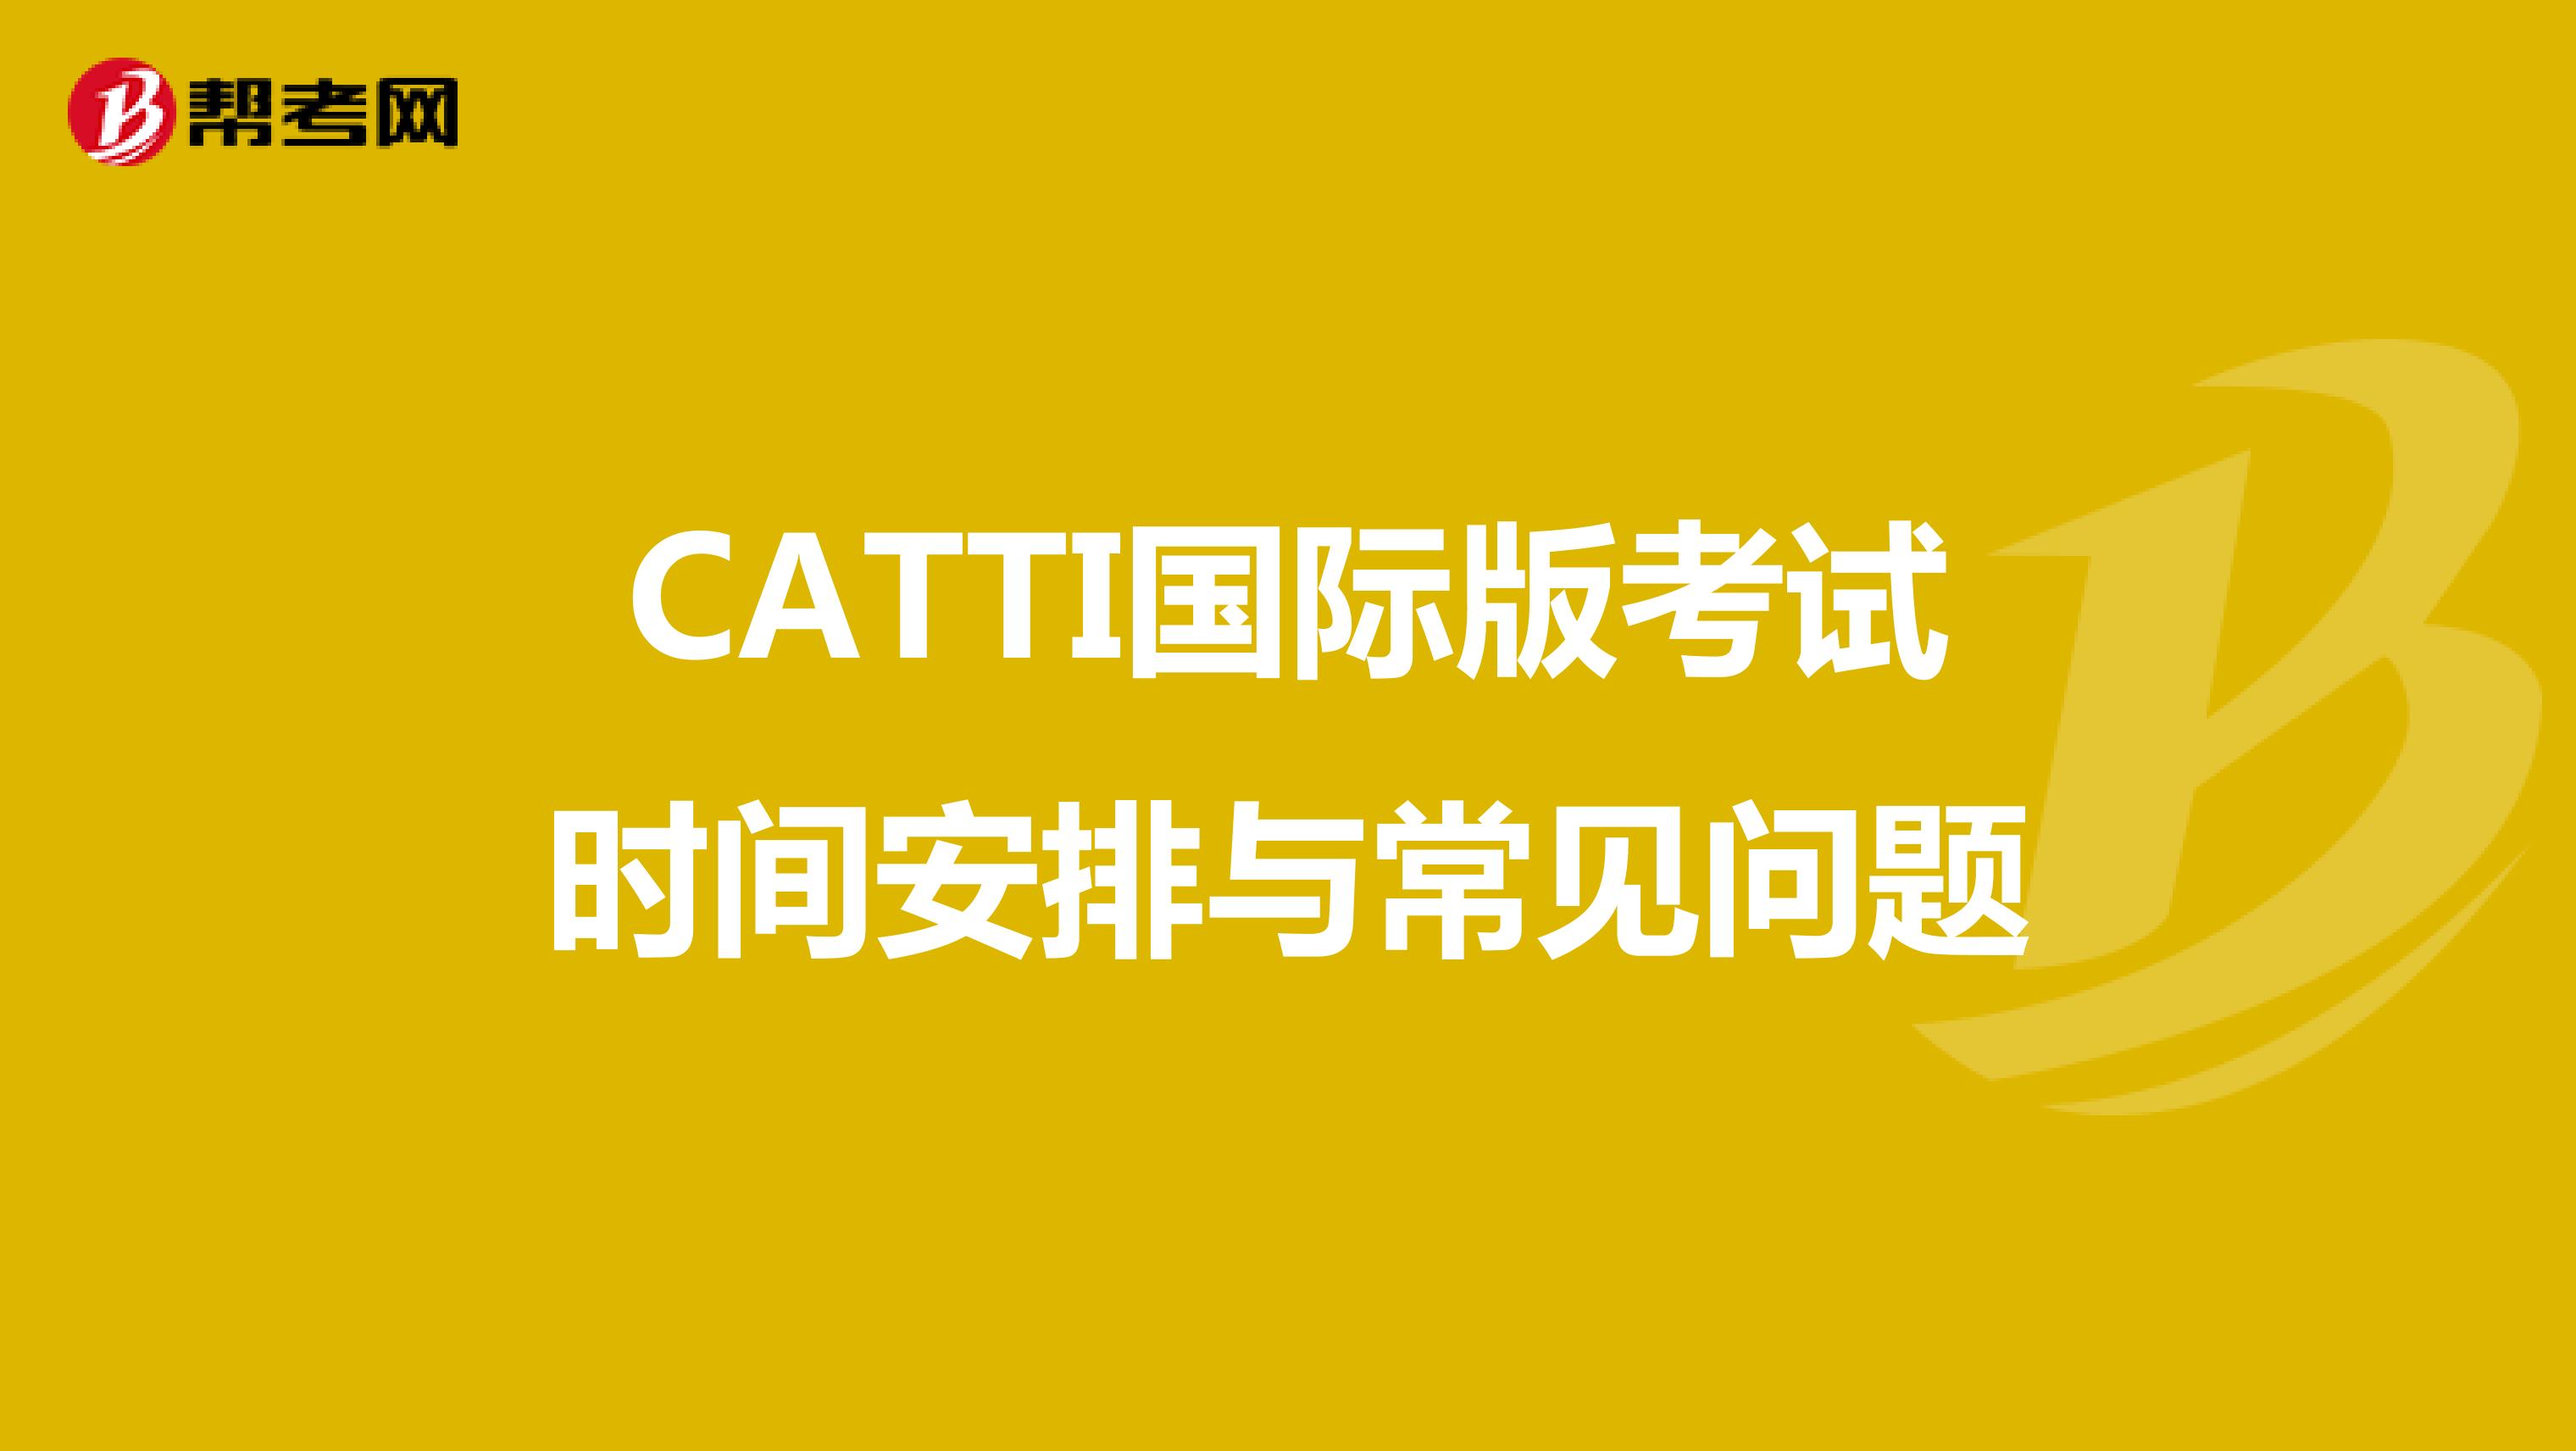 CATTI国际版考试时间安排与常见问题